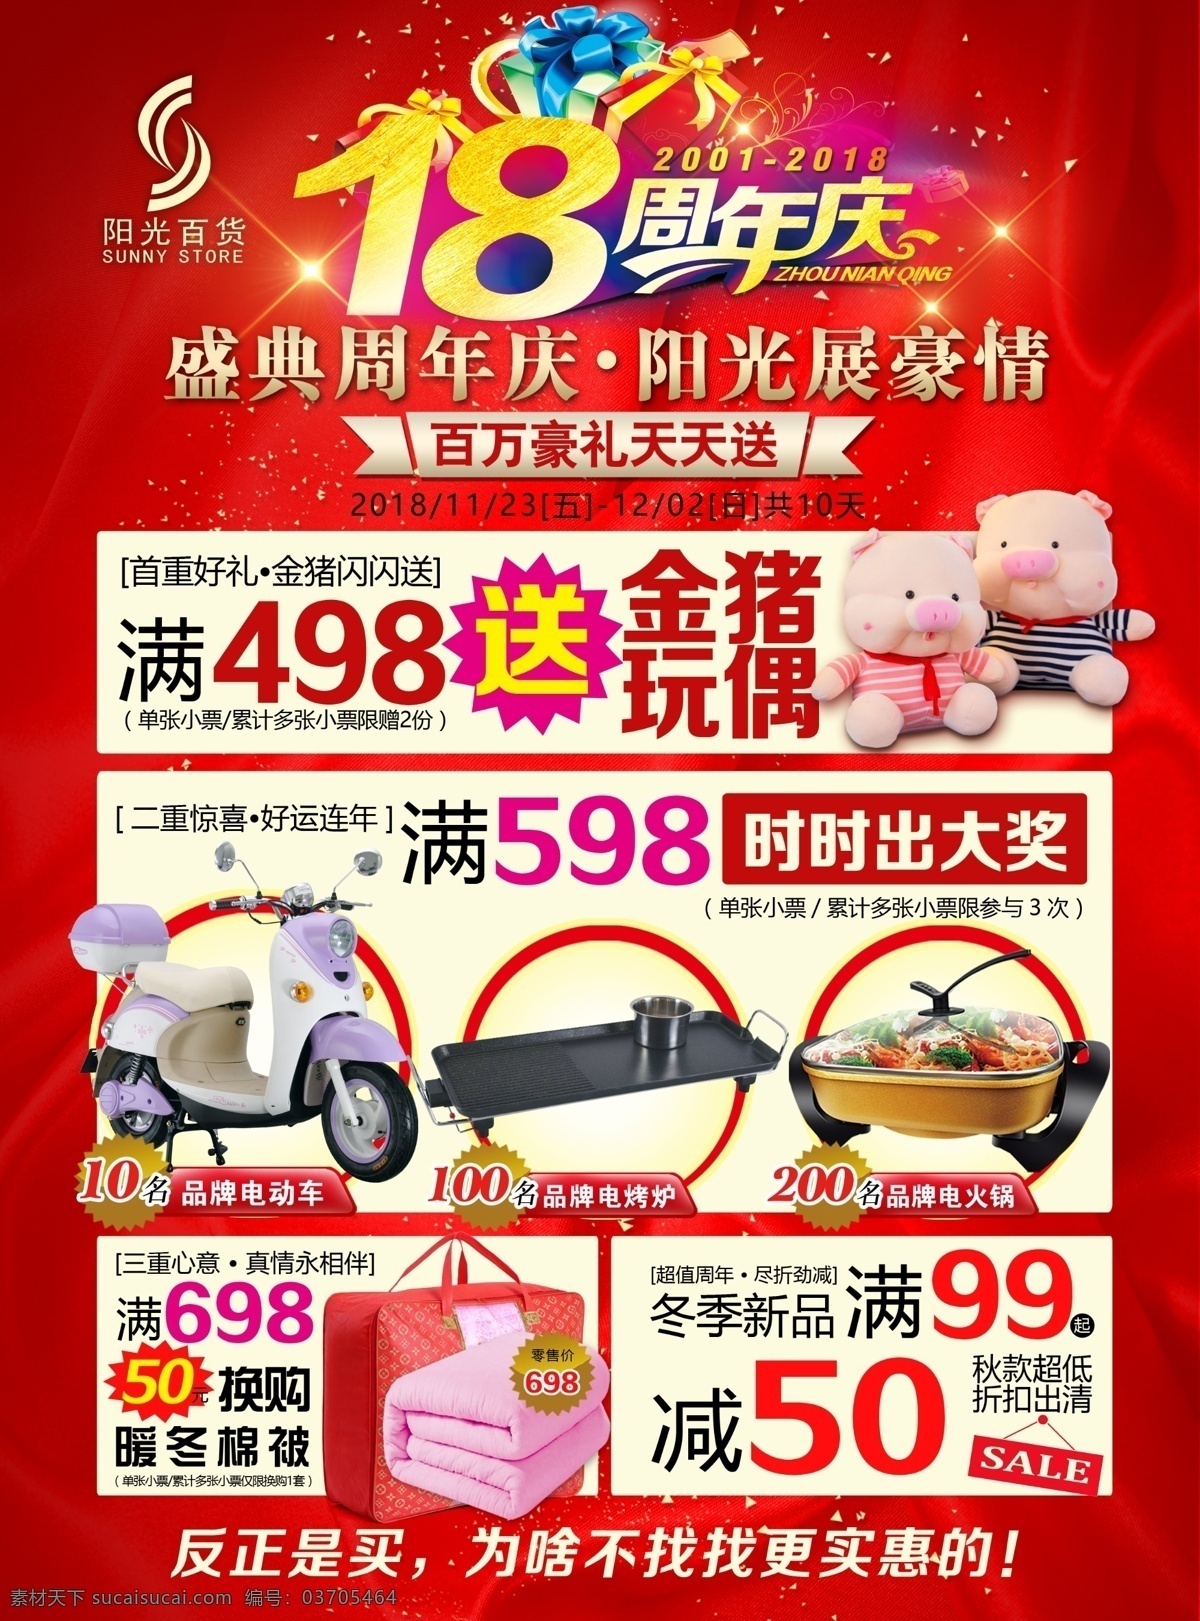 周年庆海报 18周年庆 百货促销 星光 红色底纹 dm 电动车 棉被 猪年玩偶 大气 喜庆